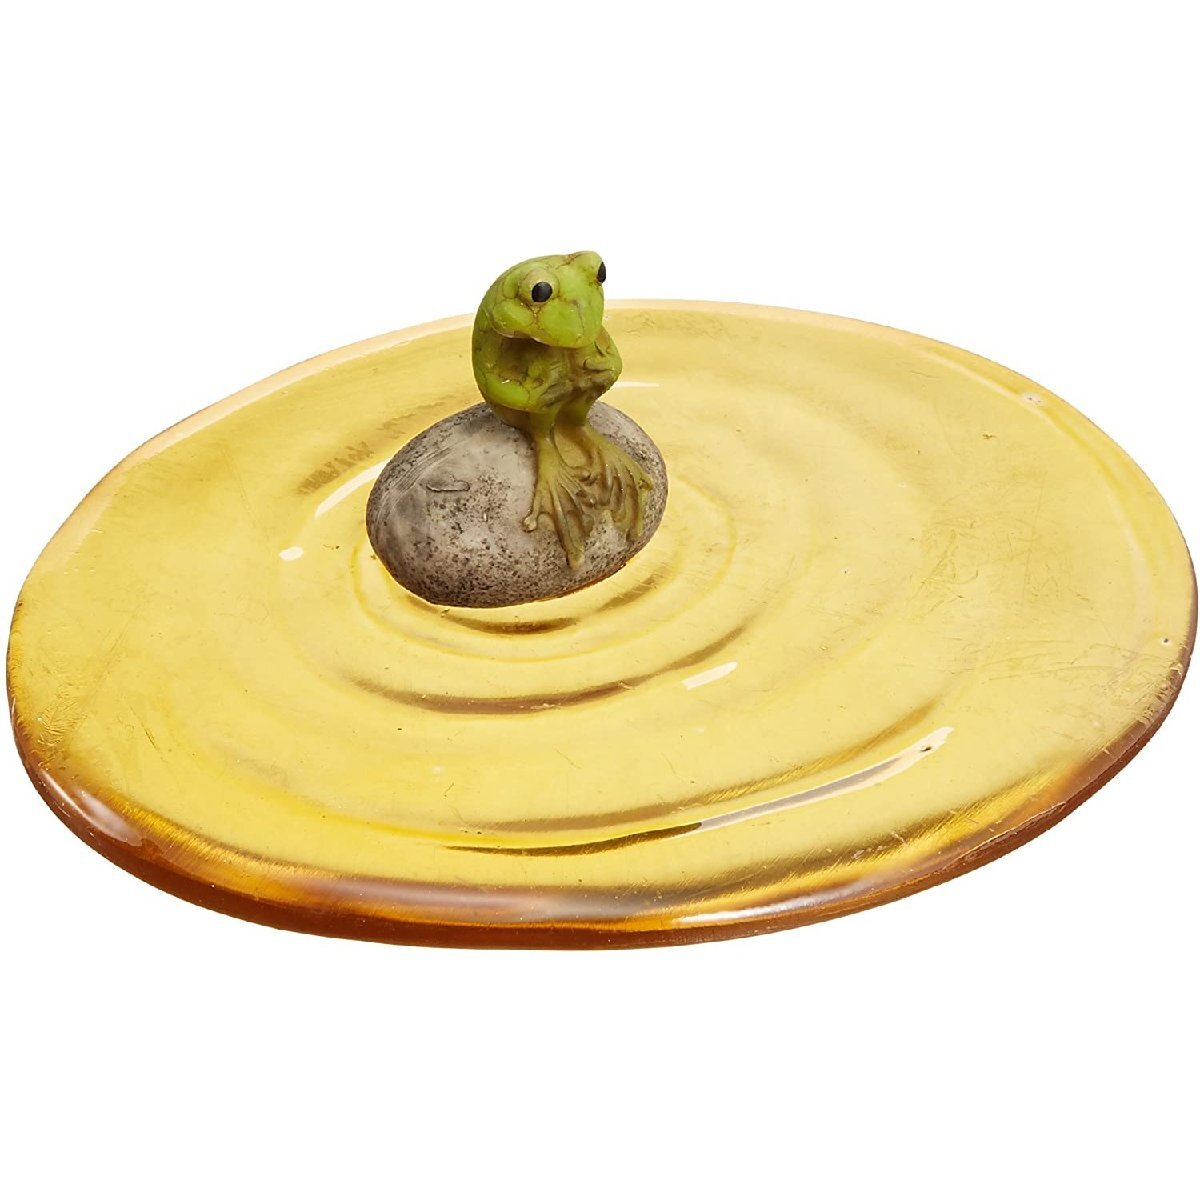 Une jolie figurine d'une grenouille assise à la surface de l'eau. 14 x 13 x 5 cm (hauteur) Résine acrylique, Articles faits à la main, intérieur, marchandises diverses, ornement, objet